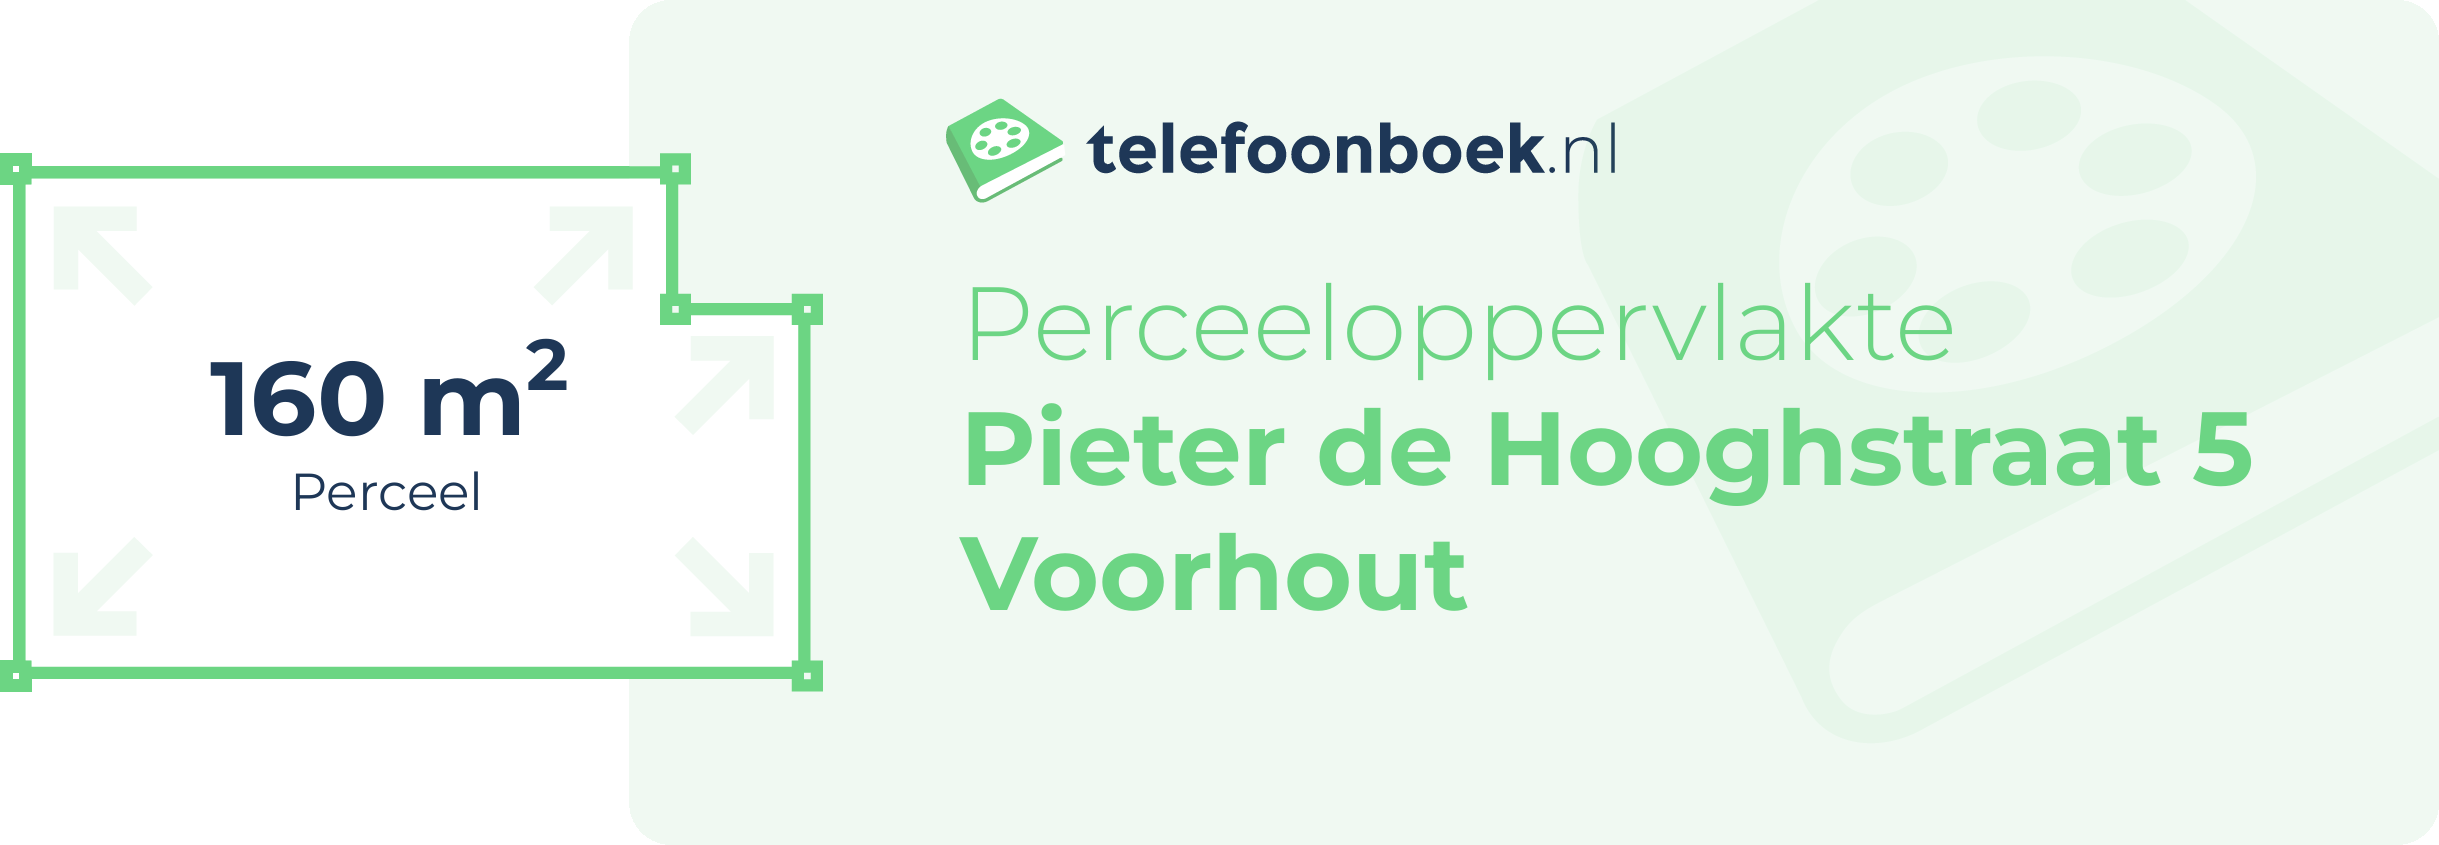 Perceeloppervlakte Pieter De Hooghstraat 5 Voorhout